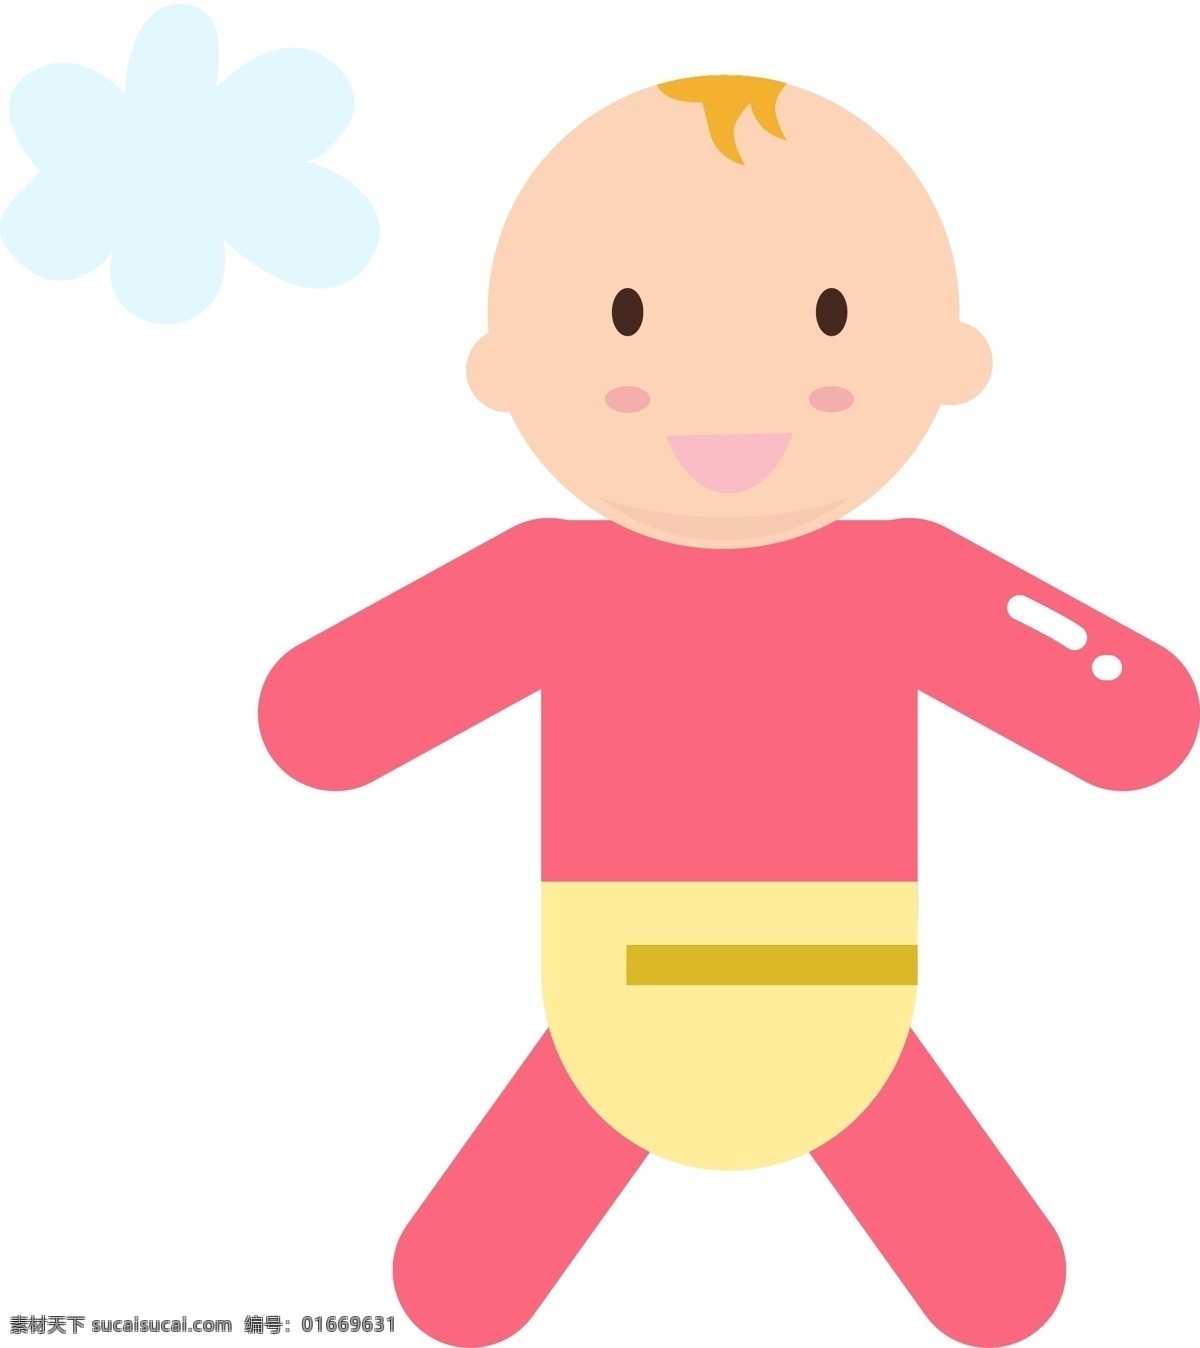 儿童节 穿 衣服 婴儿 插画 穿衣服的婴儿 可爱的孩子 卡通插画 儿童节插画 儿童节玩具 儿童节物品 儿童的器材